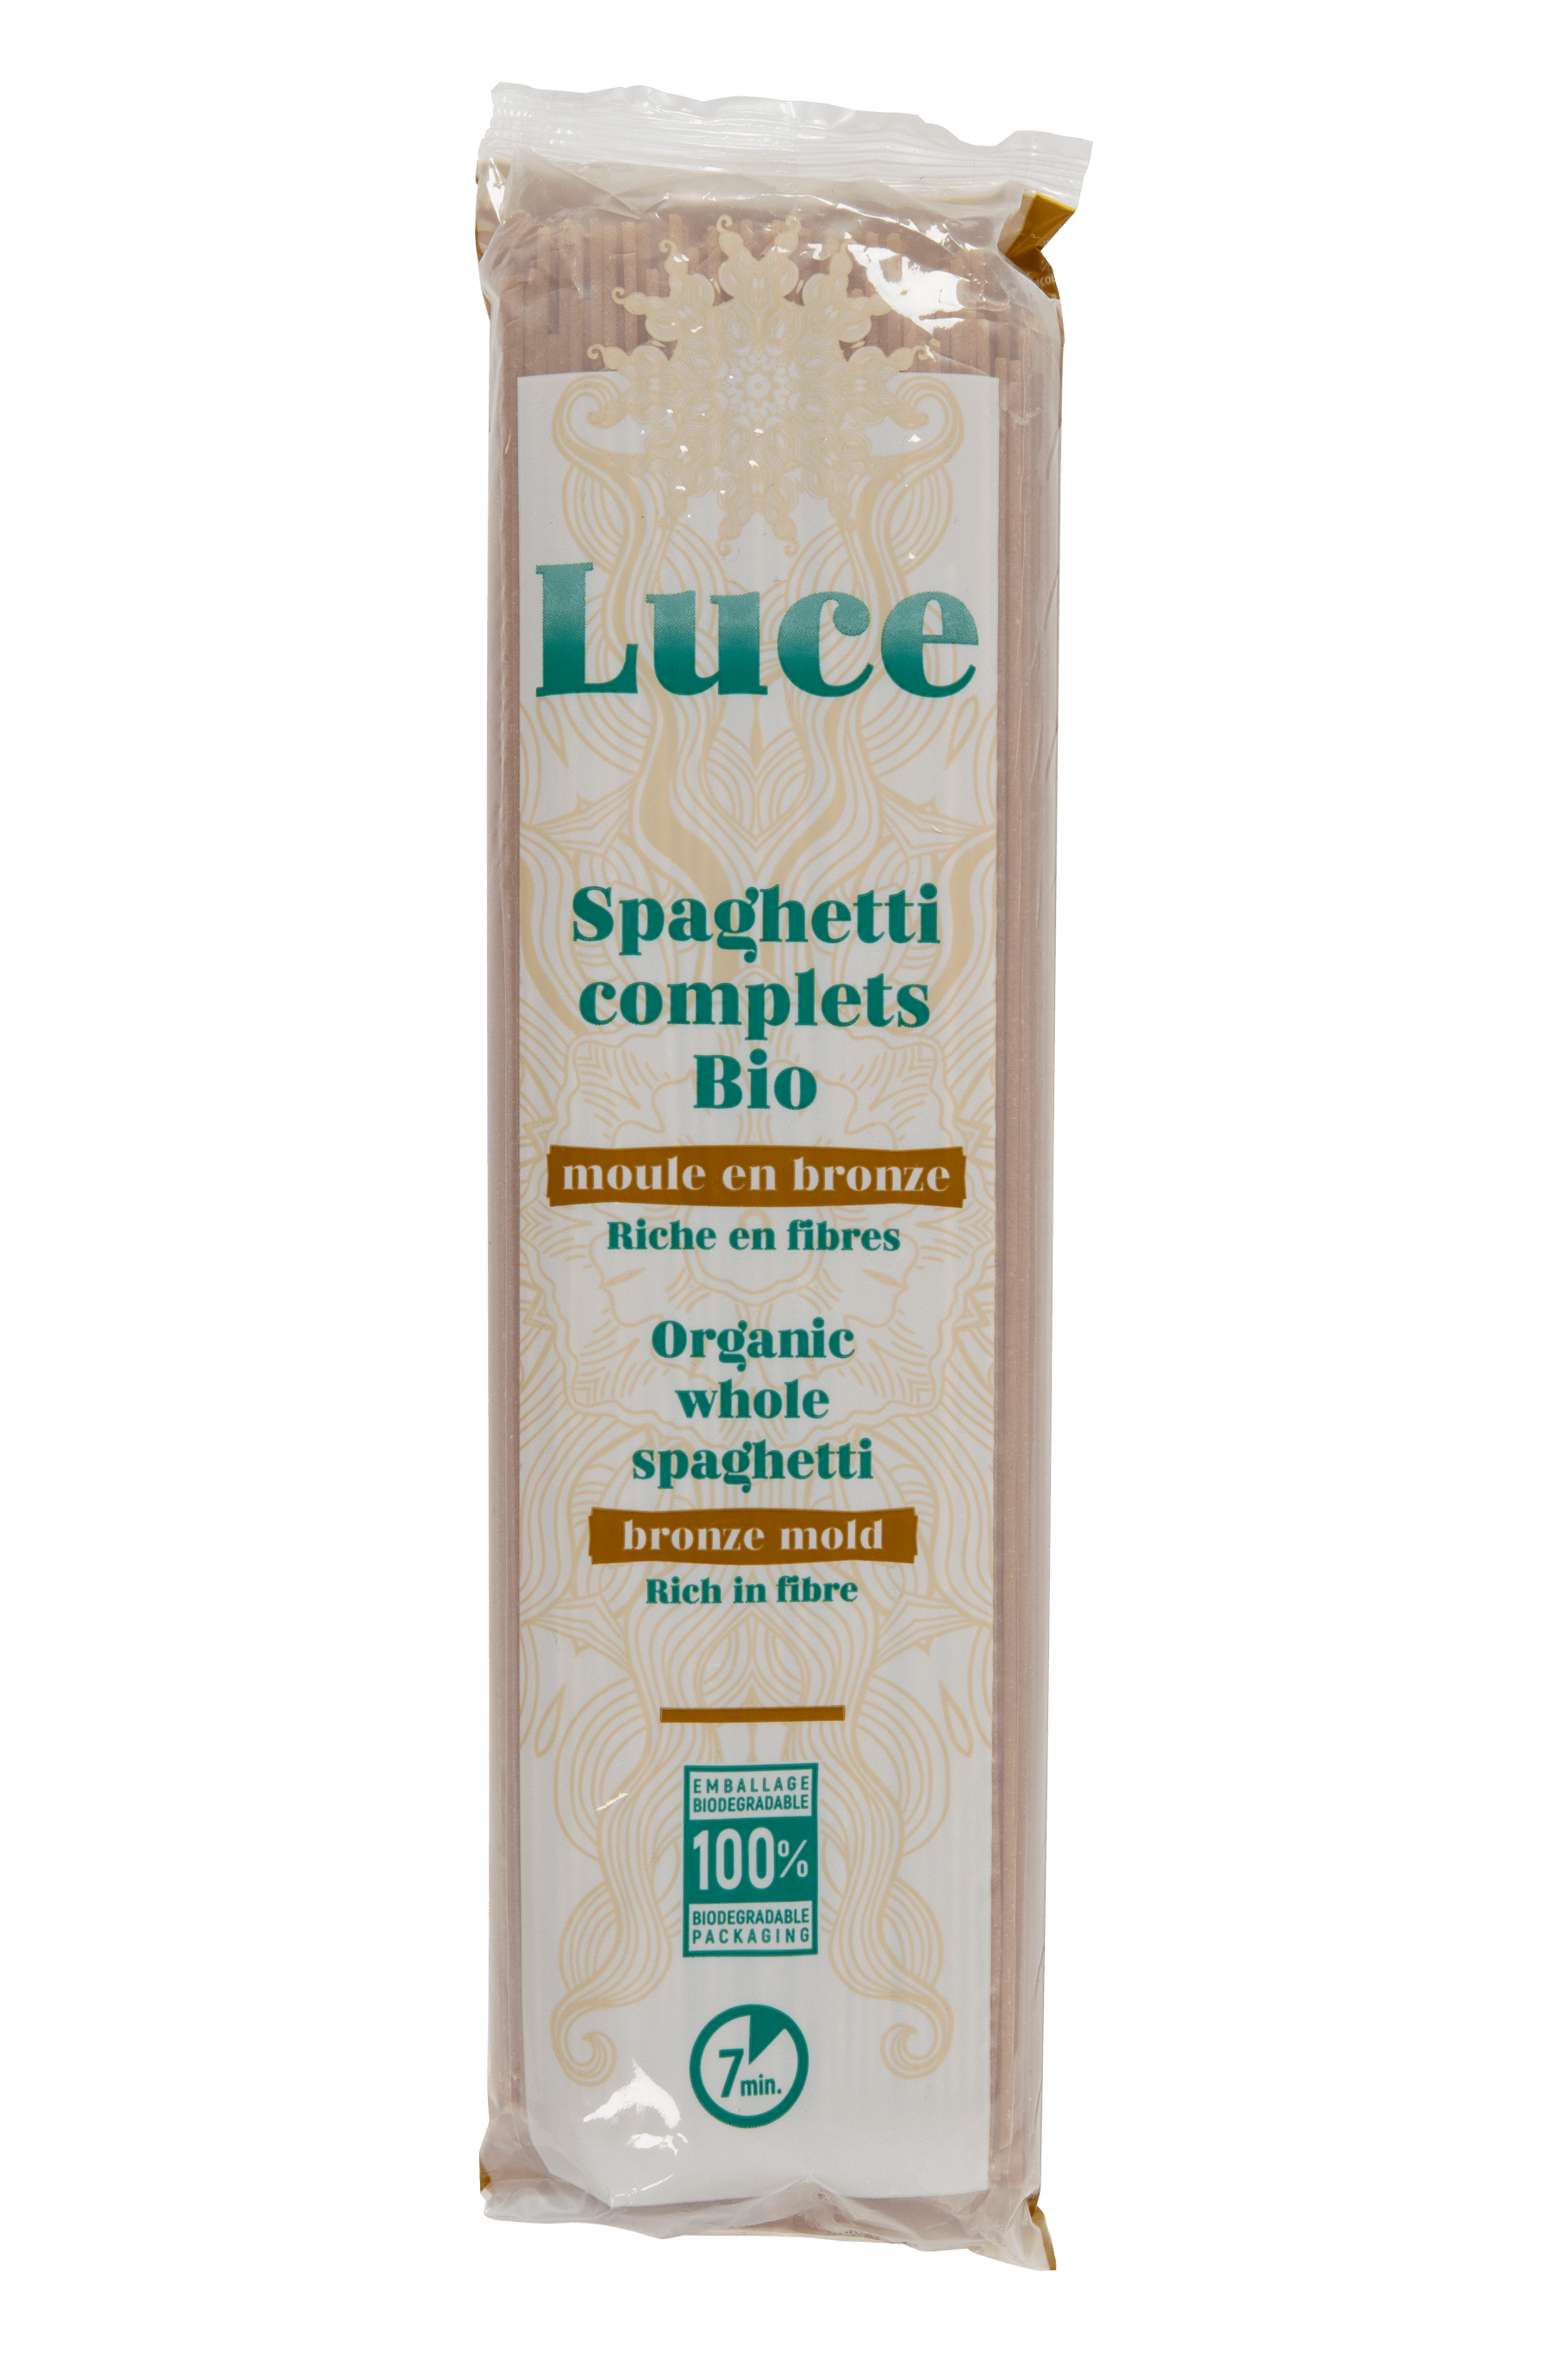 Luce Spaghetti complets bio 500g